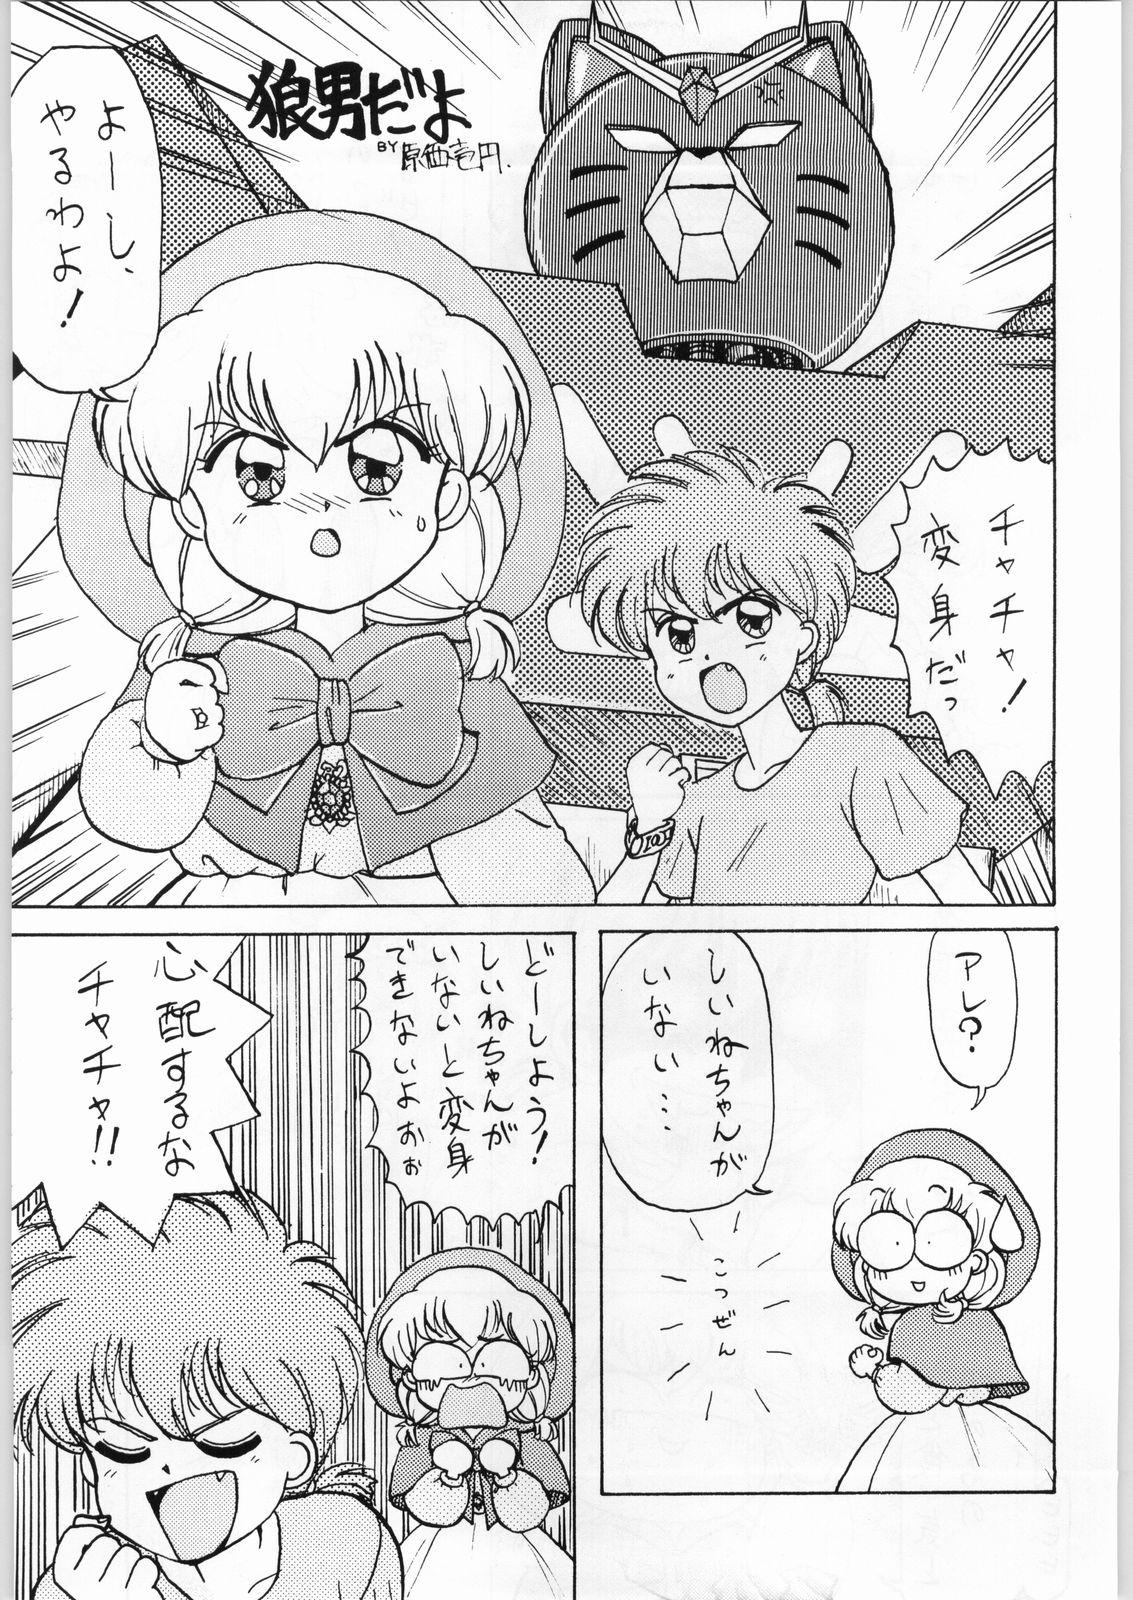 Eating Dance of Princess 3 - Sailor moon Tenchi muyo Akazukin cha cha Minky momo Ng knight lamune and 40 Tites - Page 6